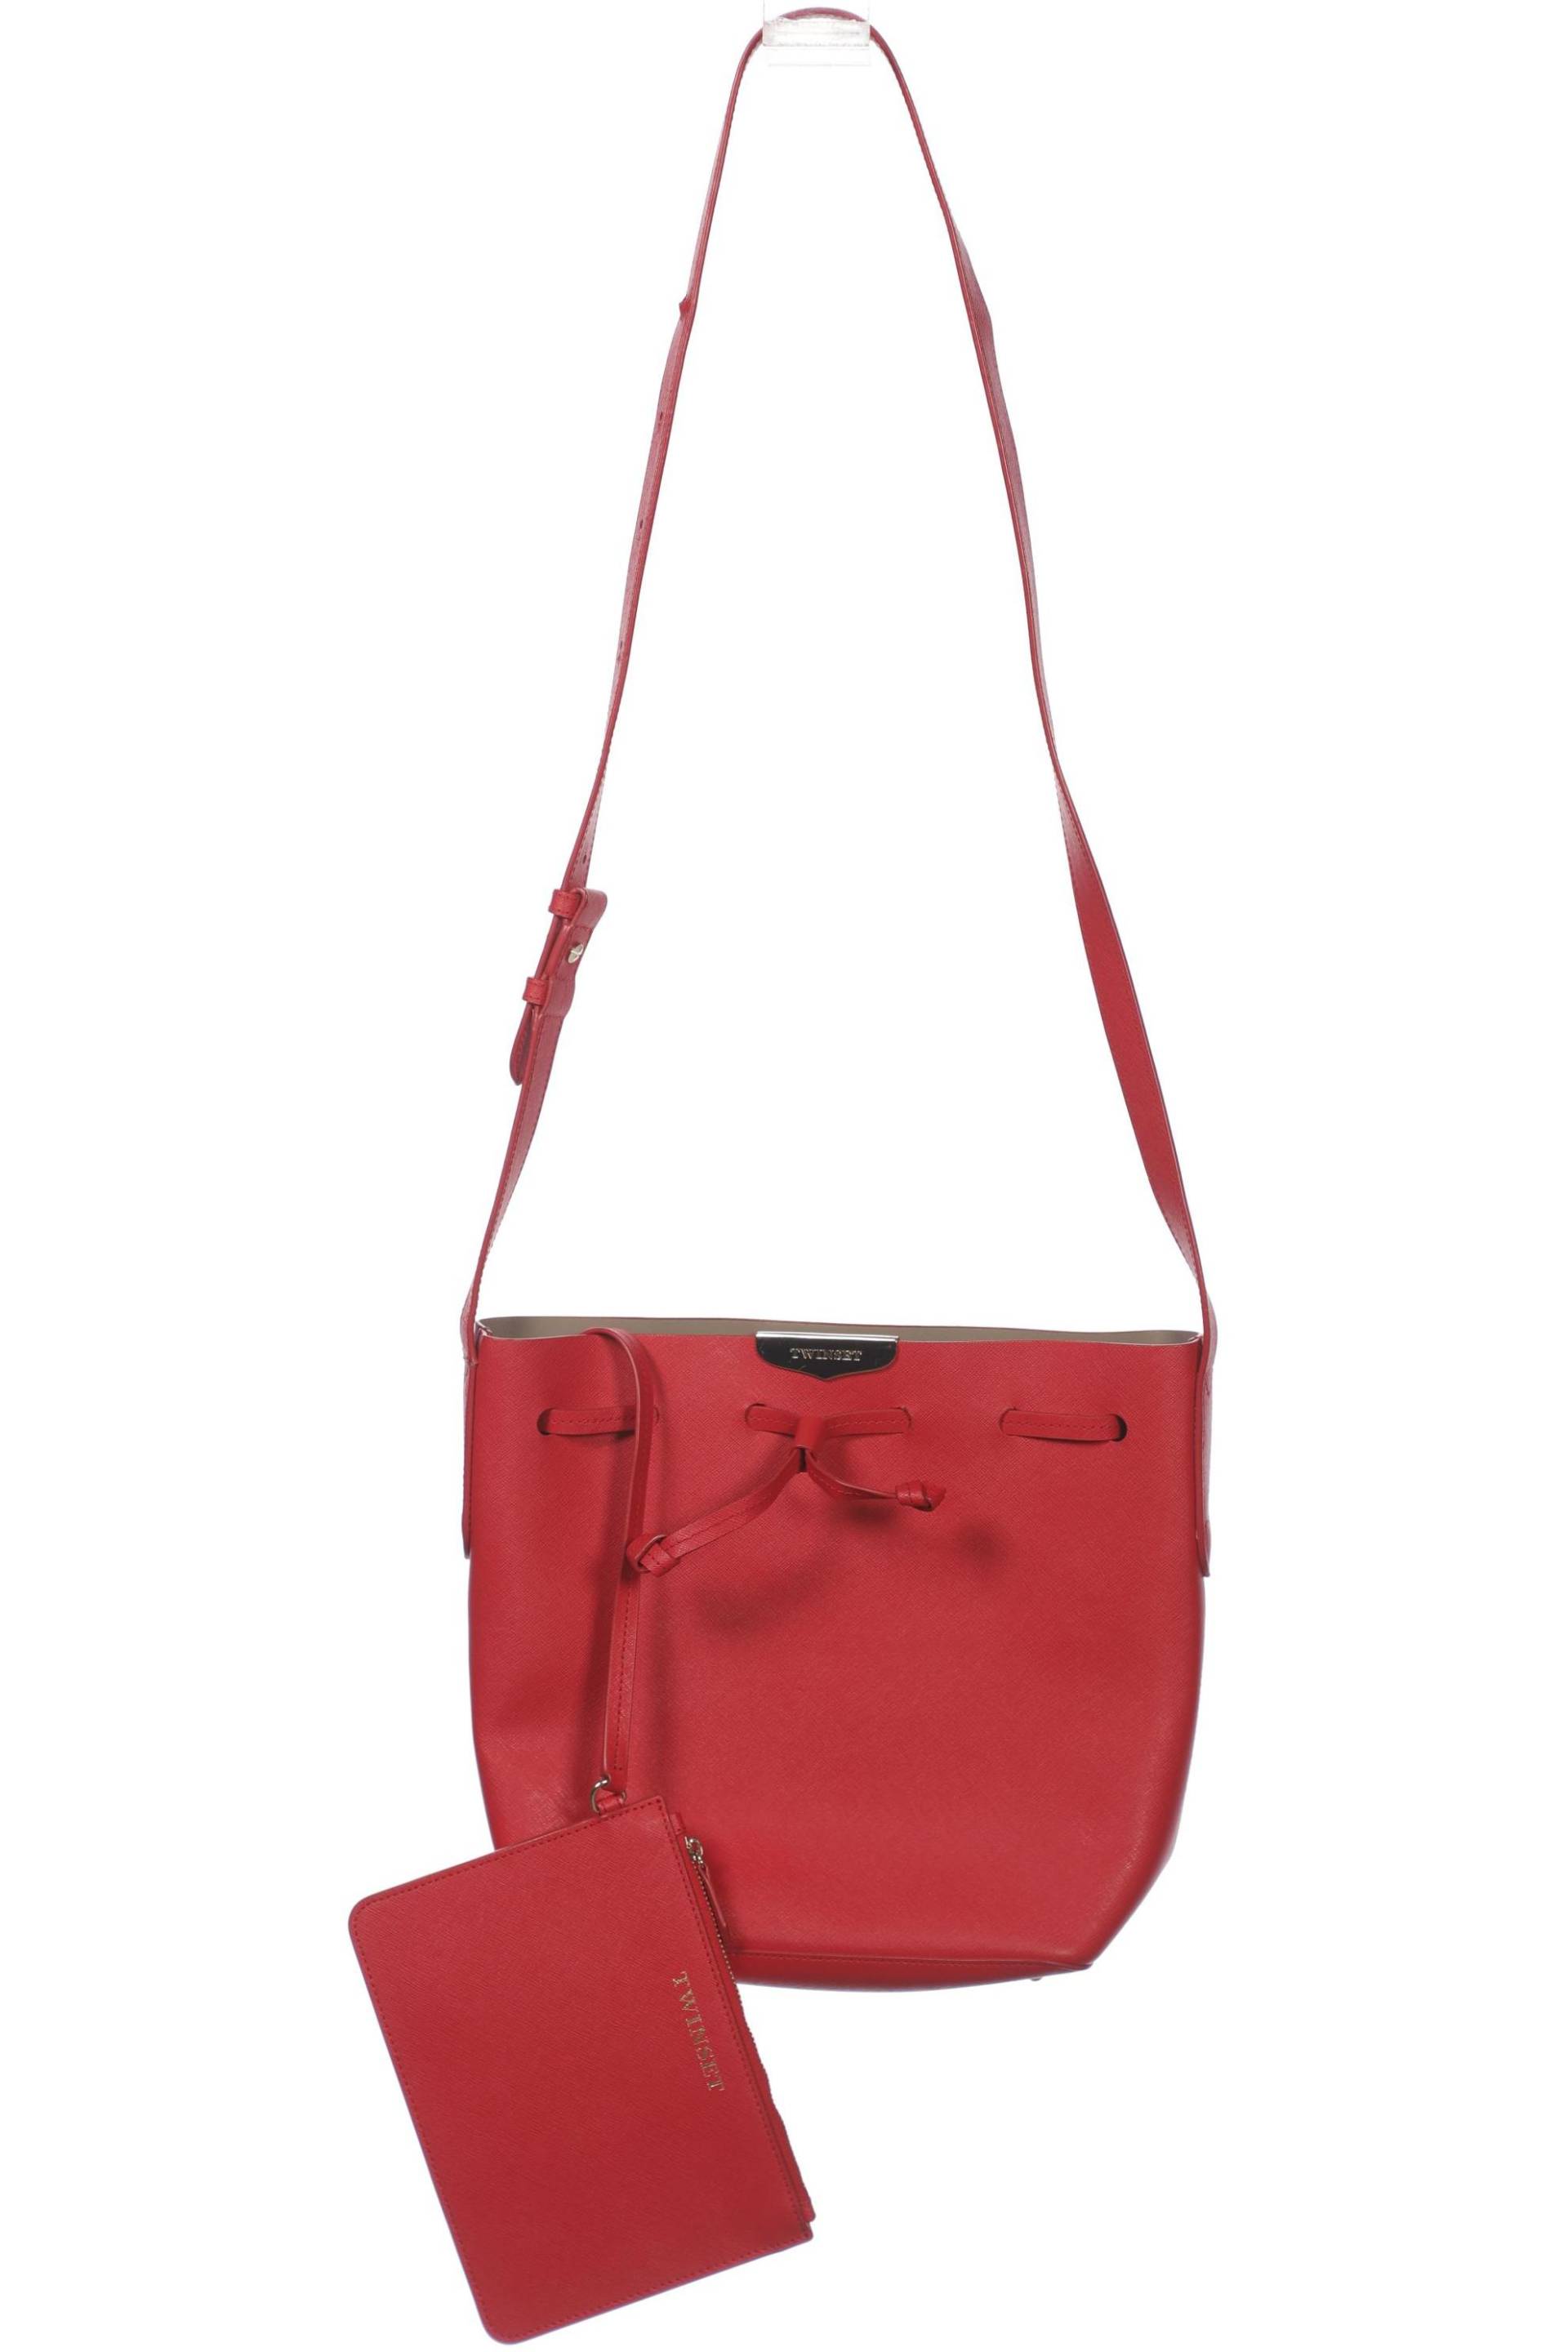 TWINSET Damen Handtasche, rot von TWINSET